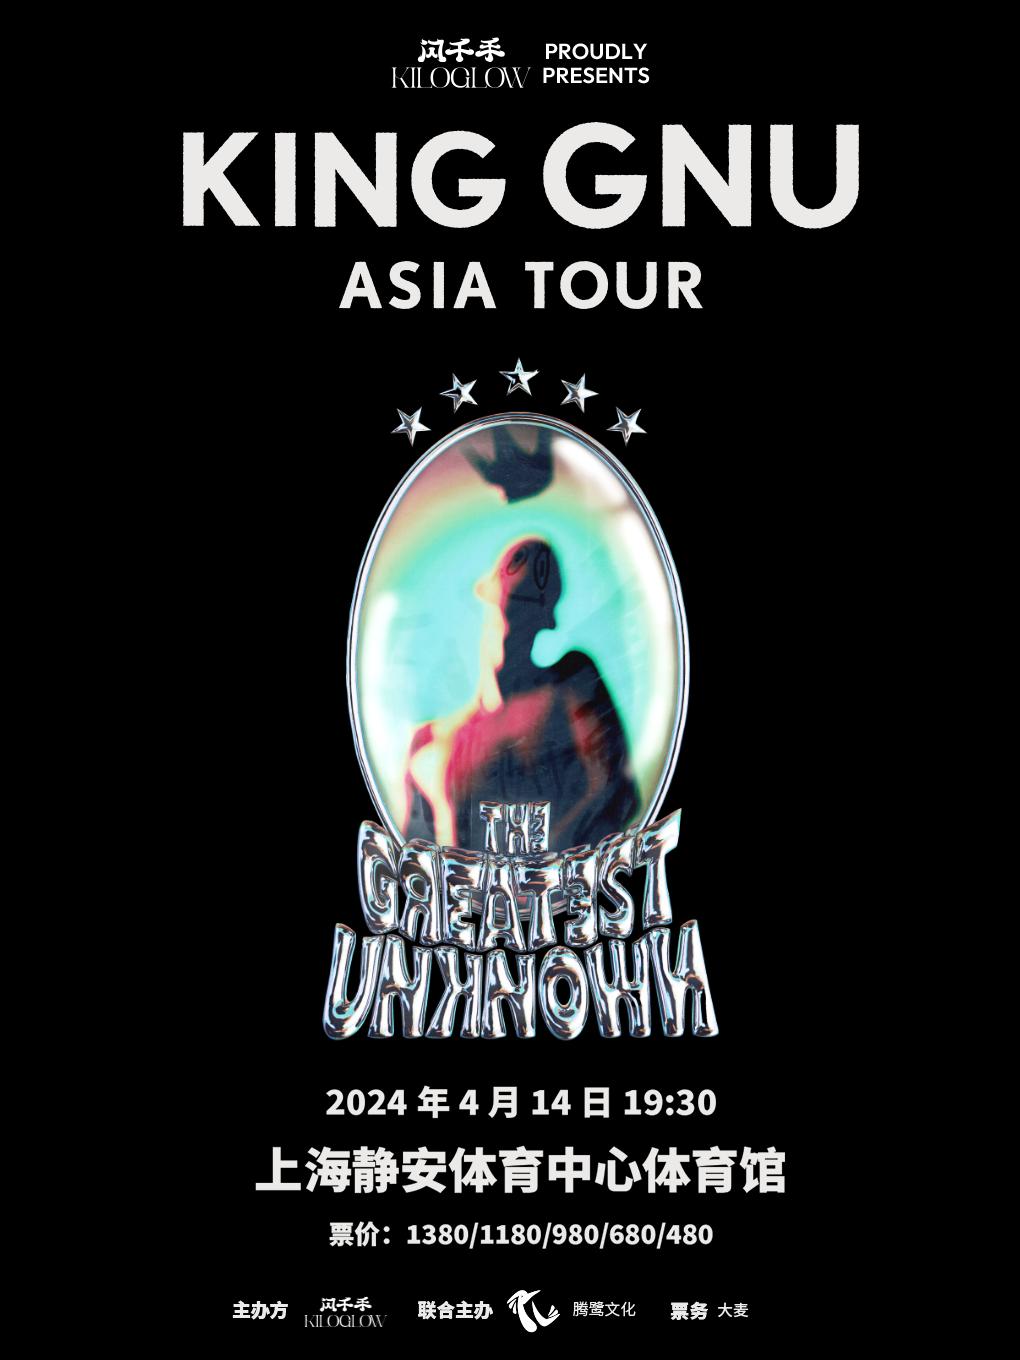 【代拍】King Gnu上海演唱会